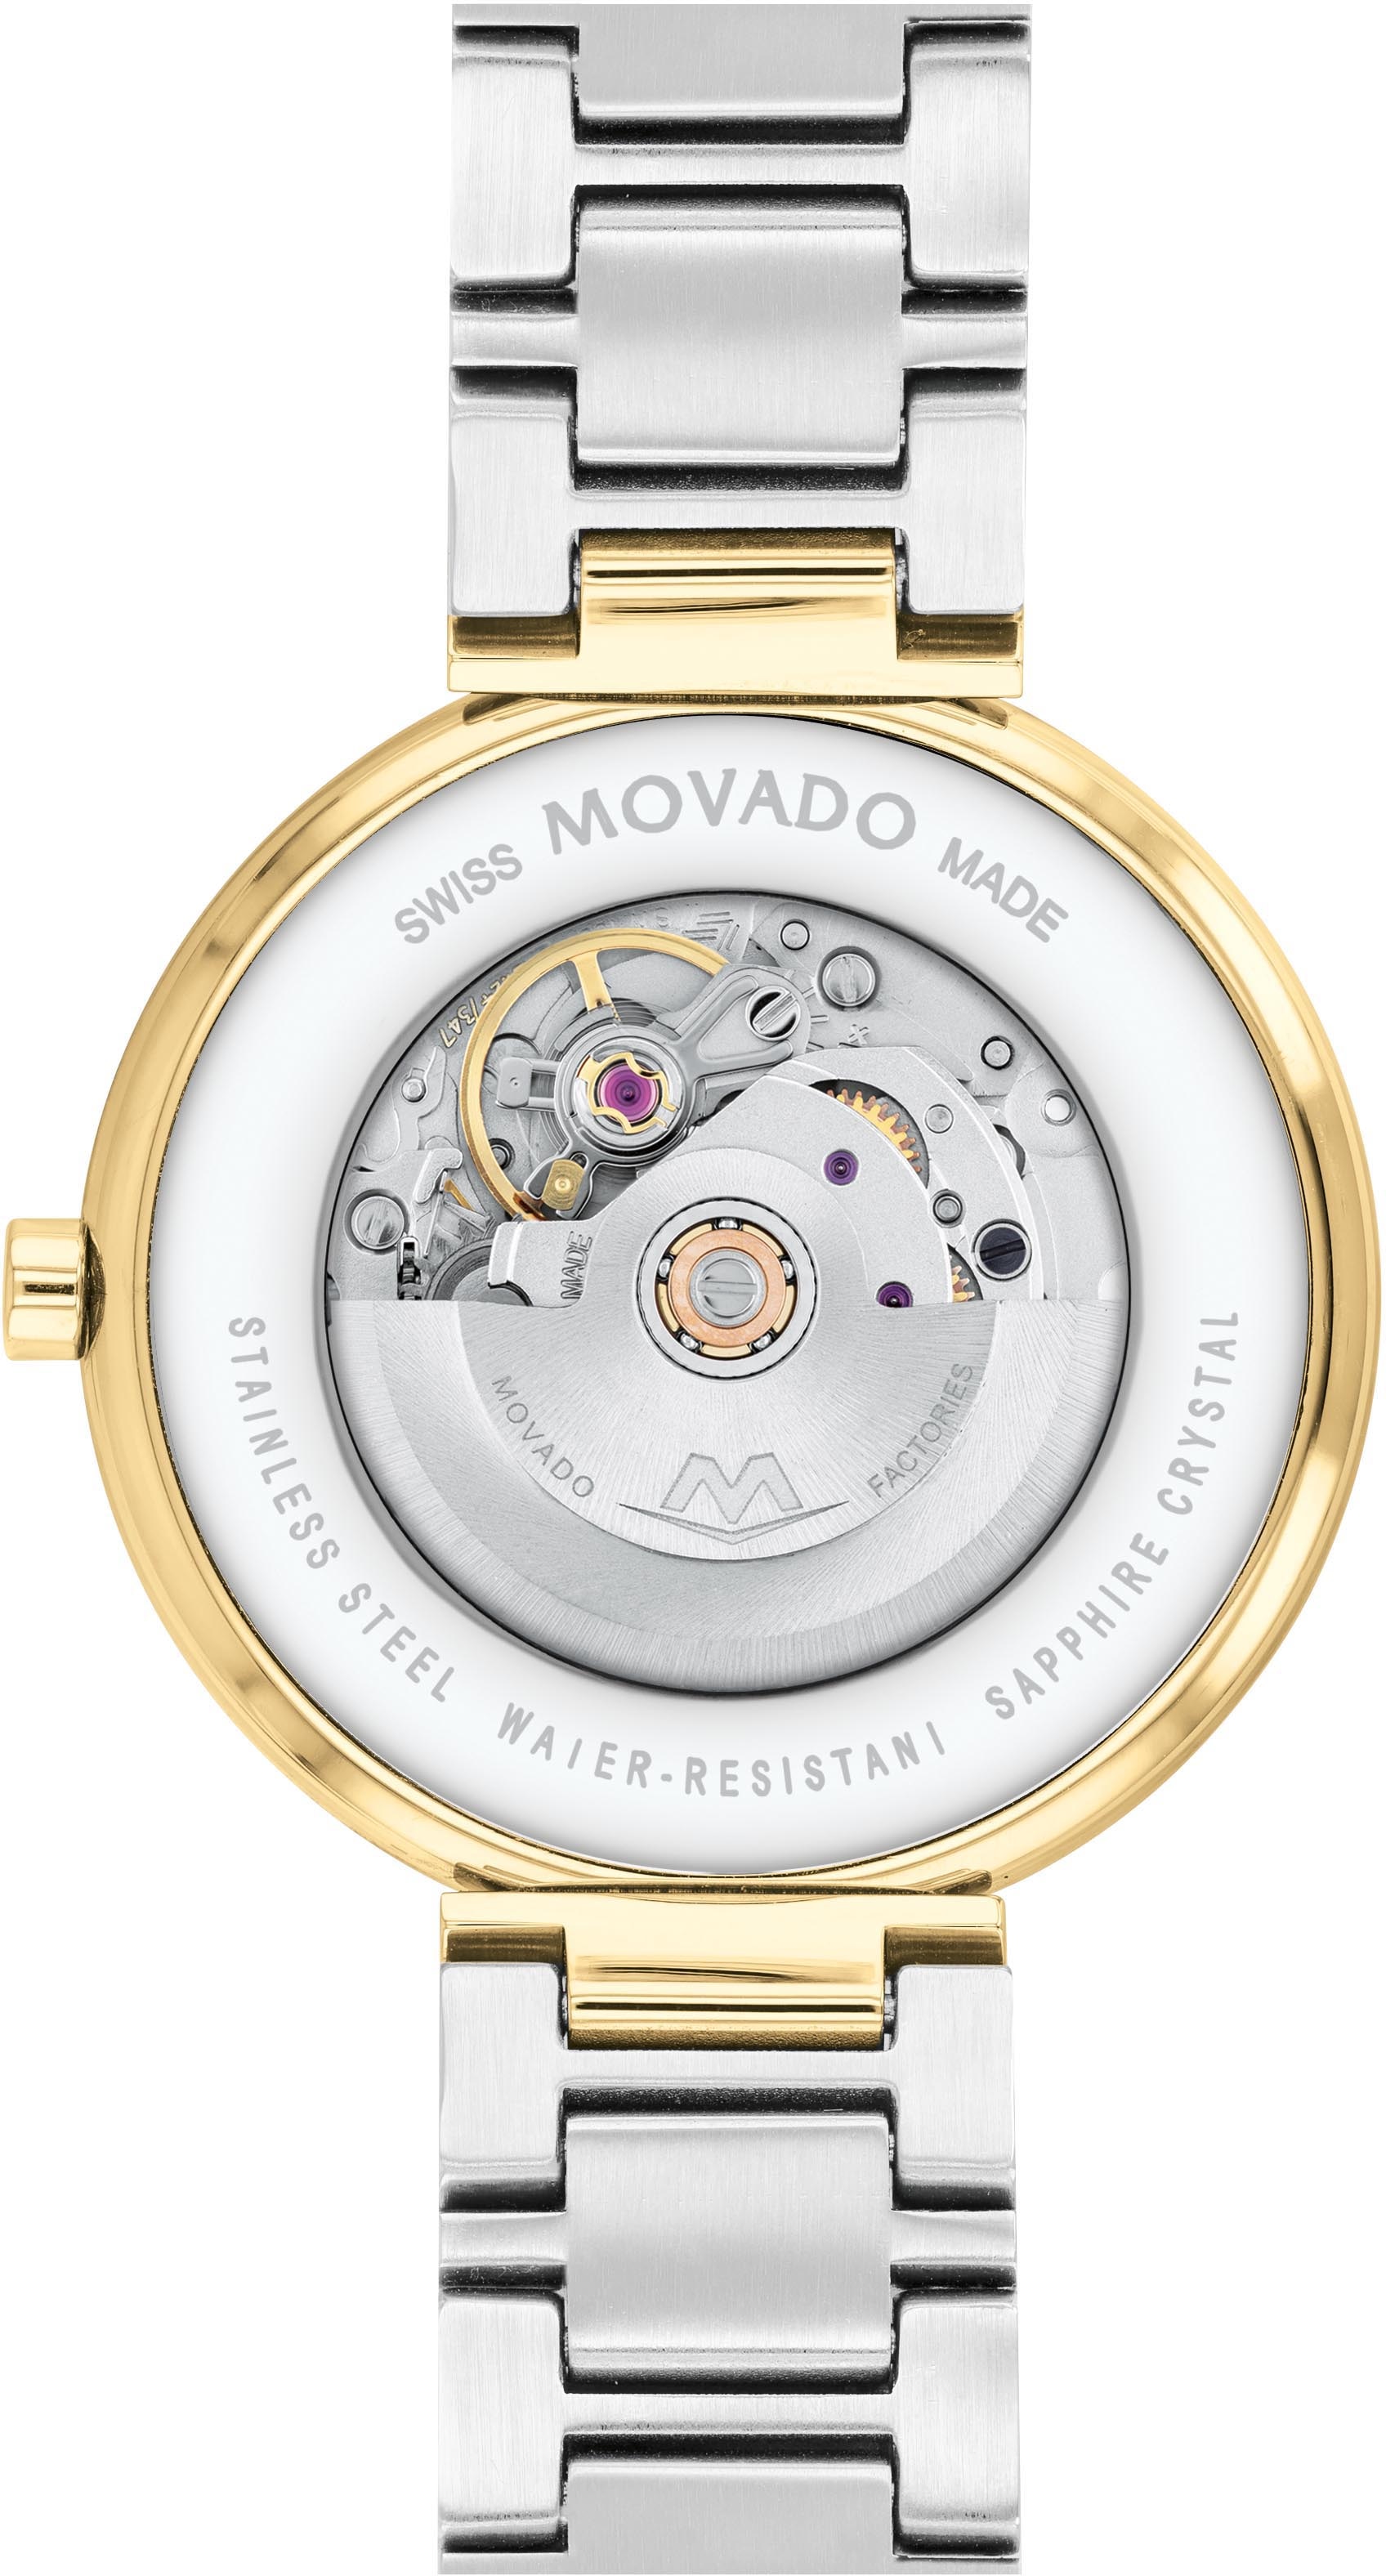 MOVADO Automatikuhr »MUSEUM Classic Automatic 32 mm, 0607679«, Armbanduhr, Damenuhr, mechanische Uhr, Swiss Made, Datum, bicolor